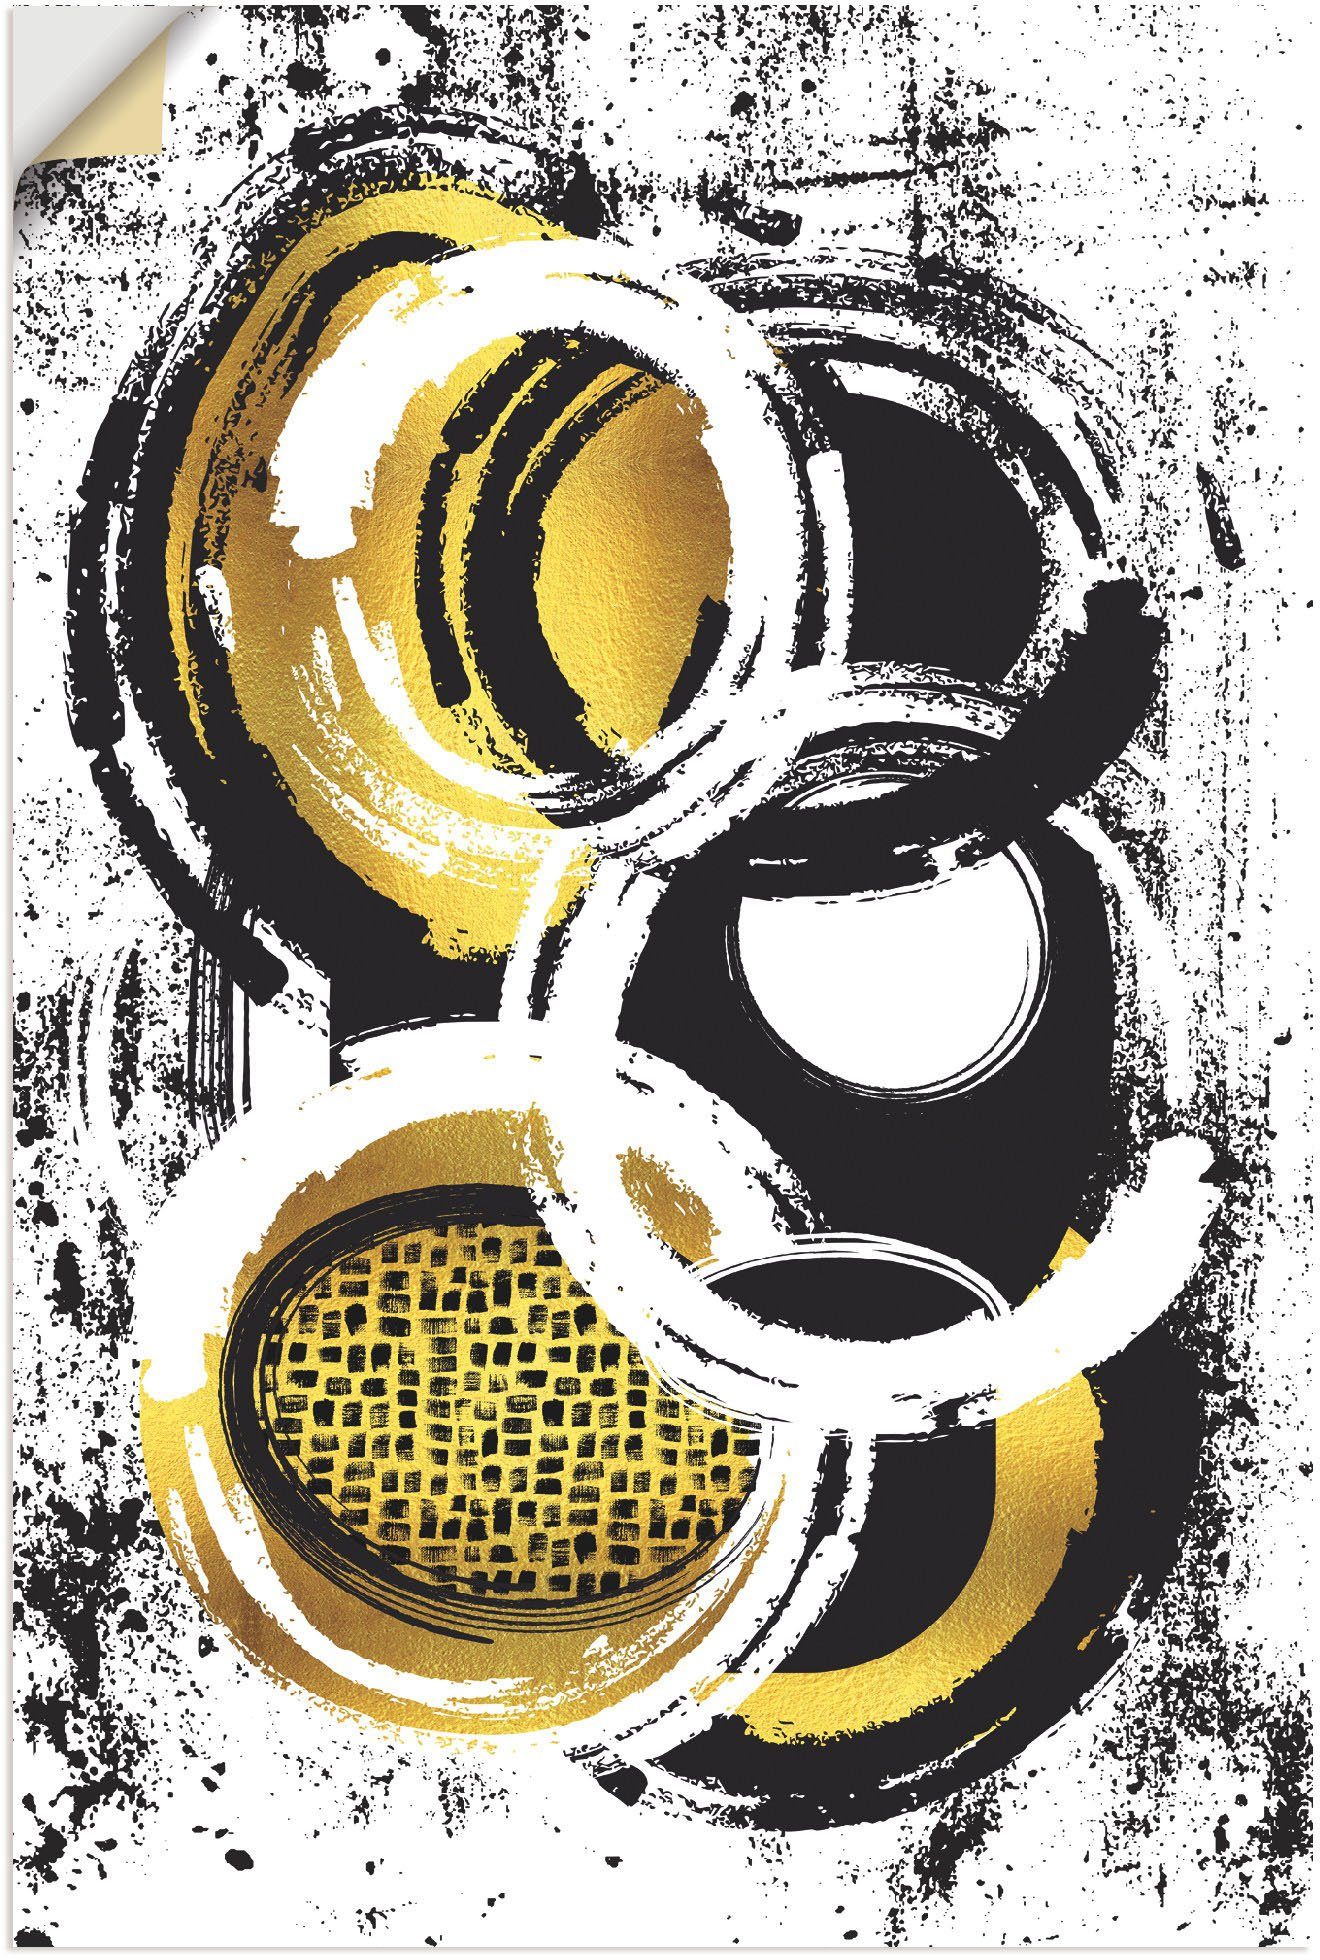 Artland Artprint Abstrakte Malerei Nr. 2 gold in vele afmetingen & productsoorten - artprint van aluminium / artprint voor buiten, artprint op linnen, poster, muursticker / wandfol